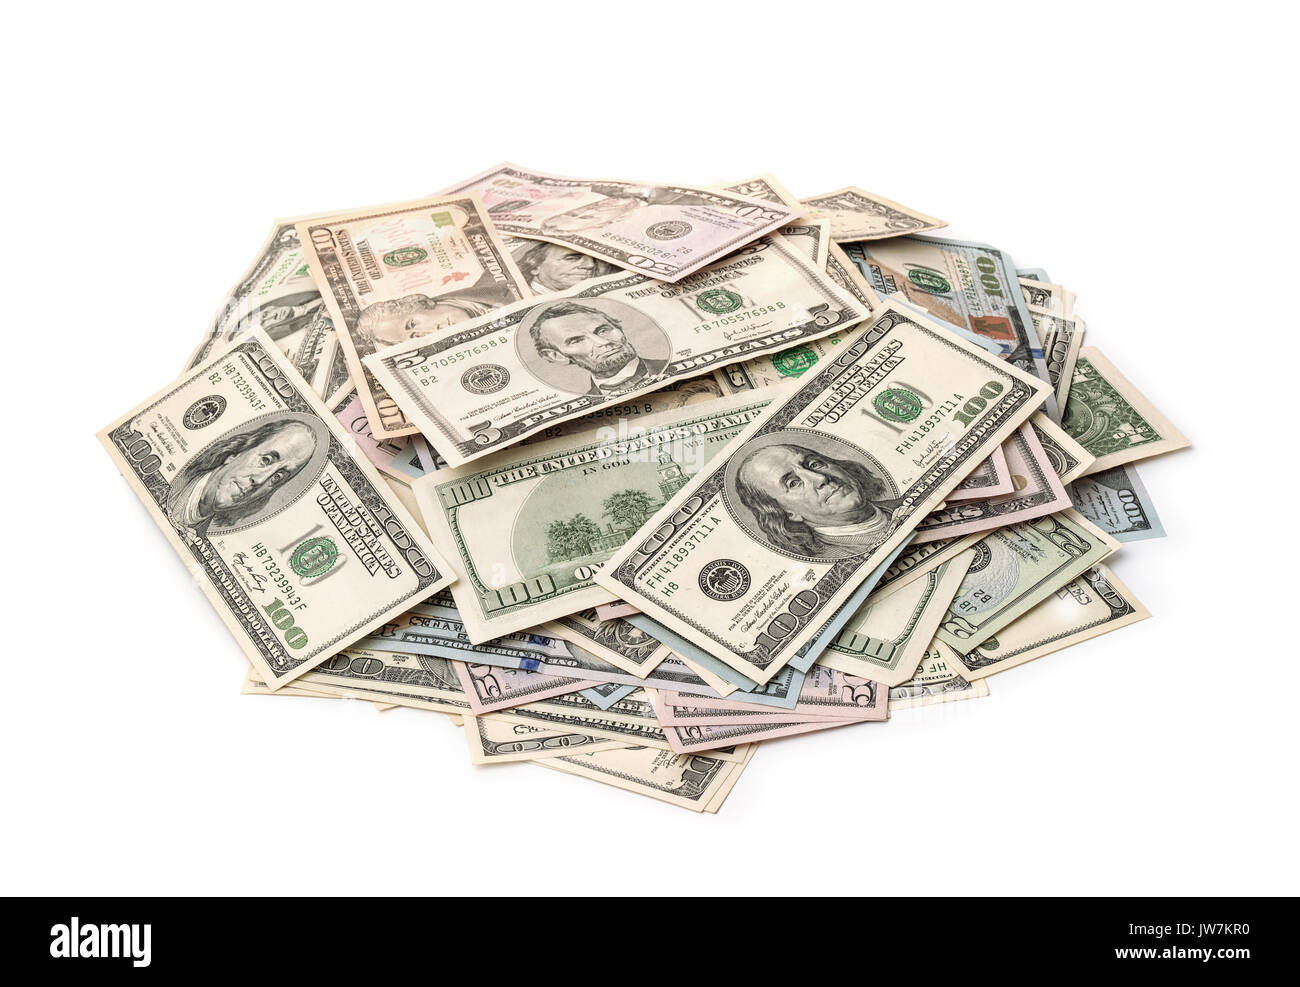 Pile de billets de dollars varié isolated on white Banque D'Images